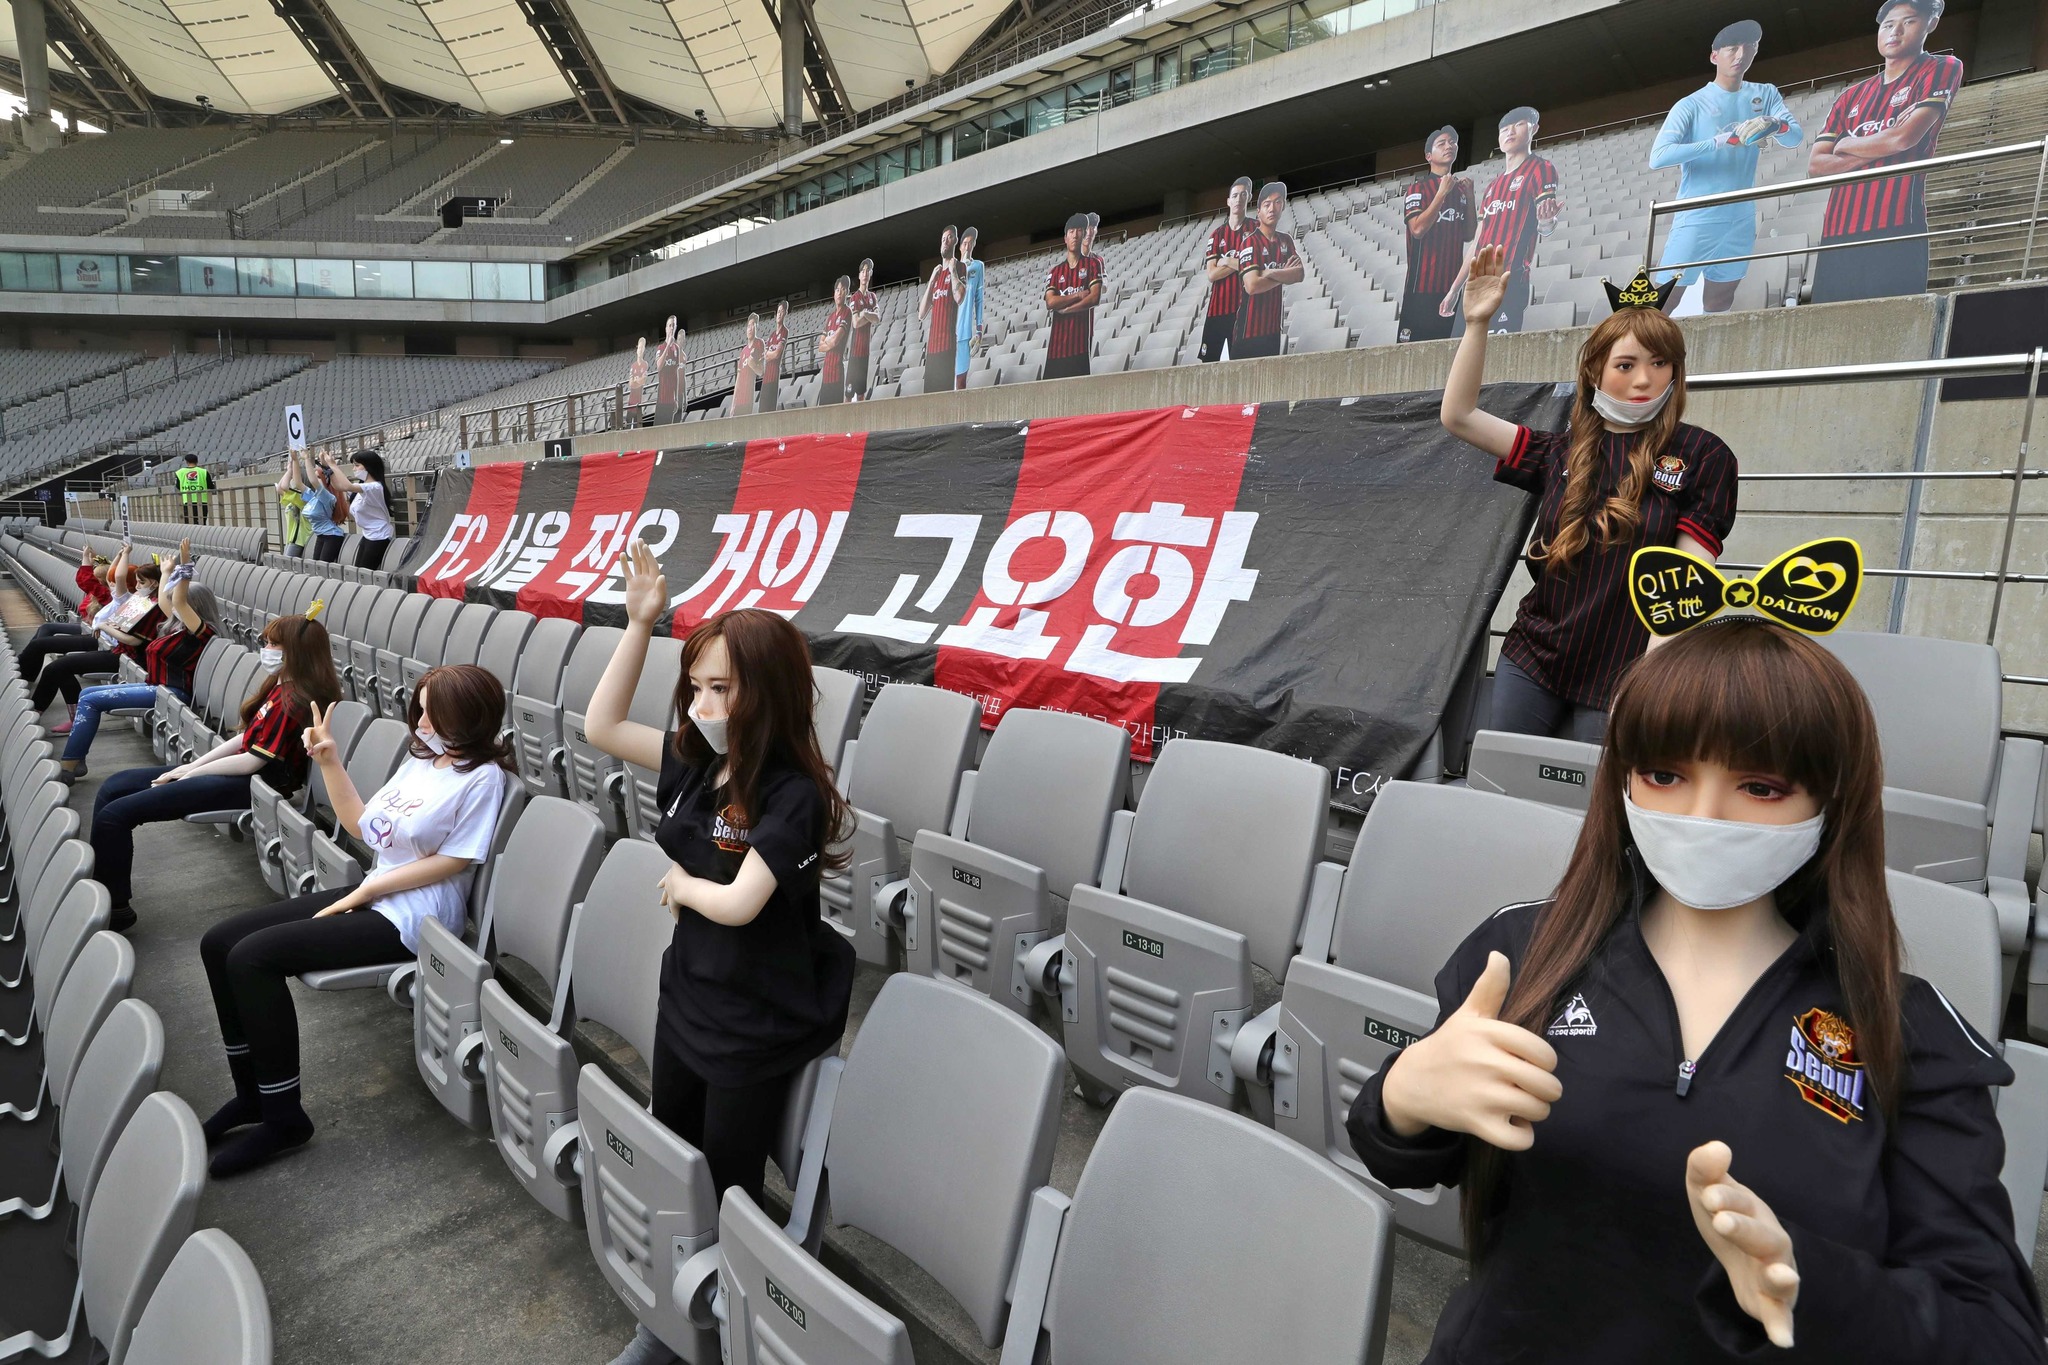 El FC Seoul utiliz muecas sexuales para dar ambiente a sus gradas...